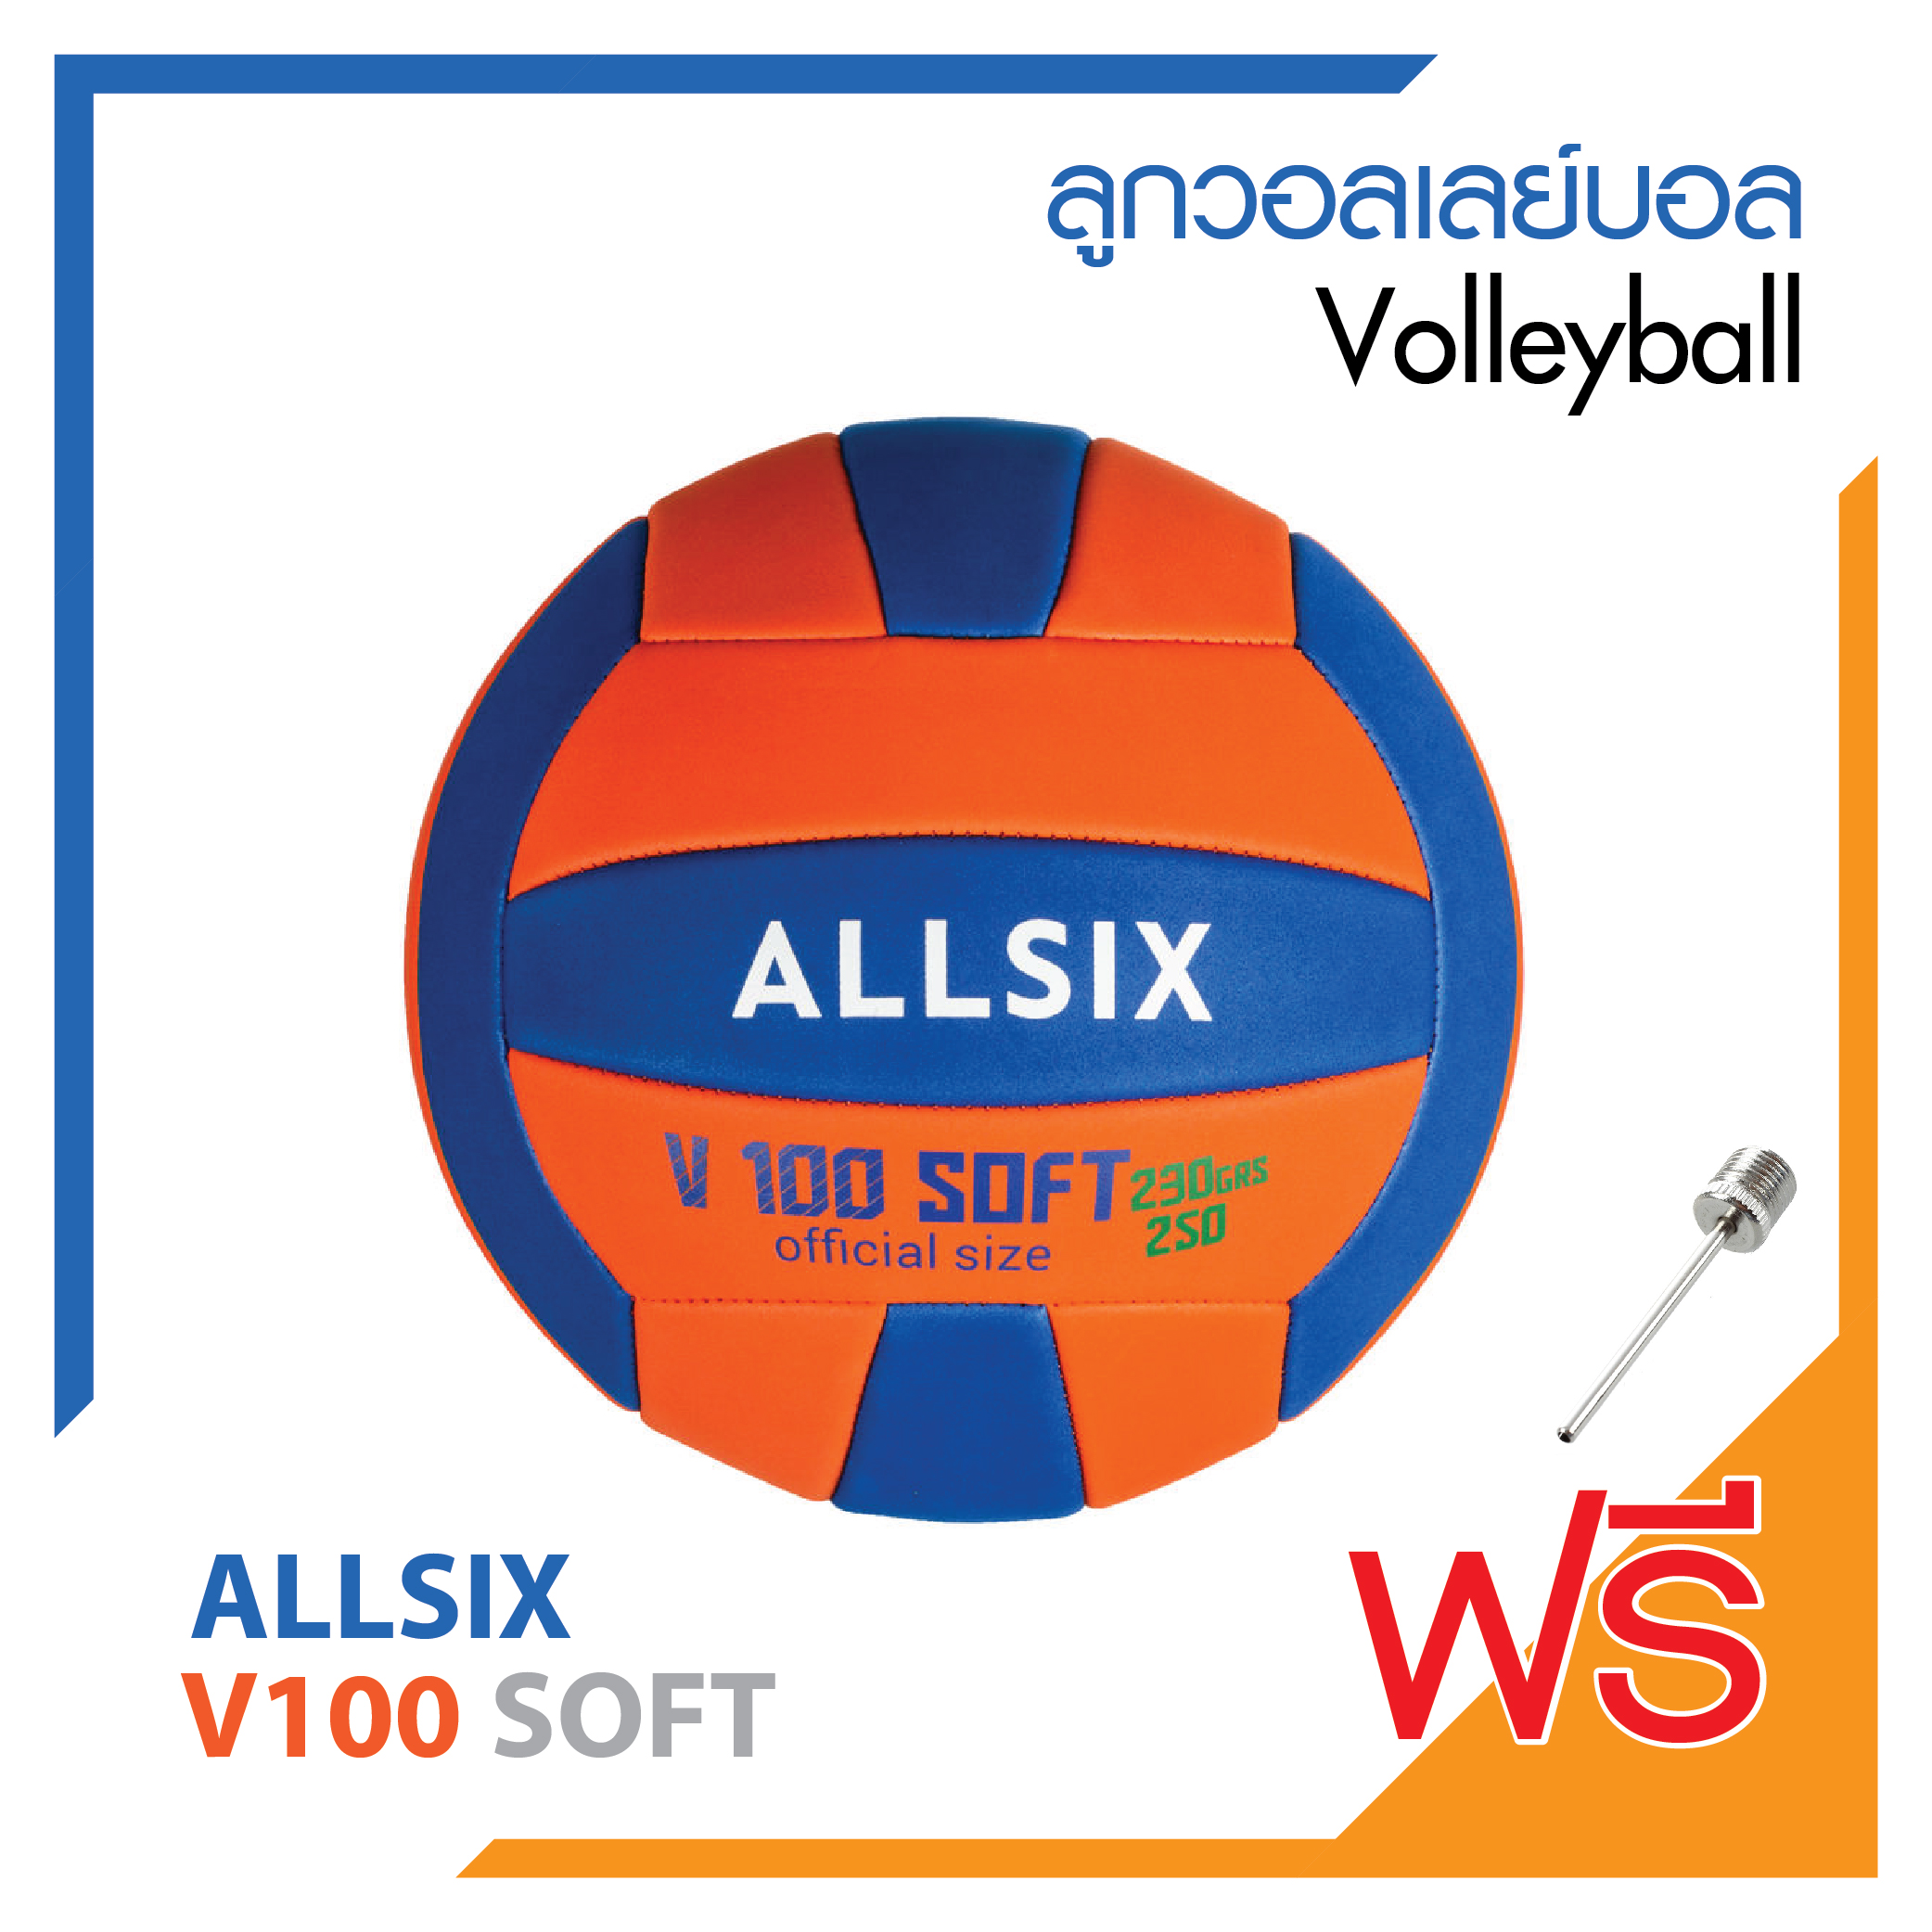 ลูกวอลเลย์บอล วอลเลย์บอล Soft ยี่ห้อ ALLSIX รุ่น V100 SOFT Soft Volleyball สินค้าคุณภาพดี โฟมเนื้อนุ่มน้ำหนักเบา !! ลดพิเศษสุด